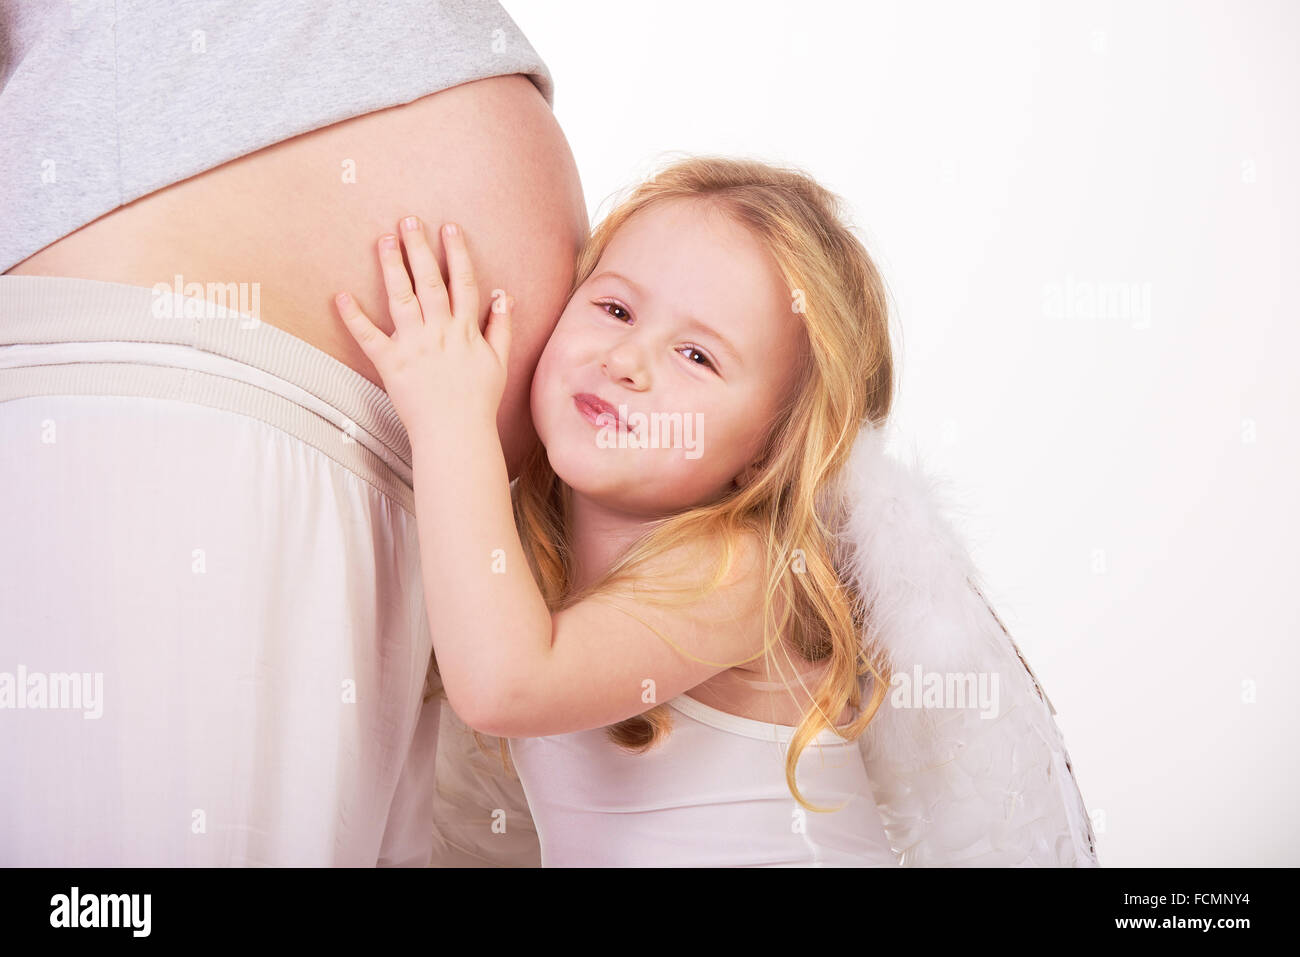 Belle blonde modèle ange cheveux hugs pregnant belly. Banque D'Images